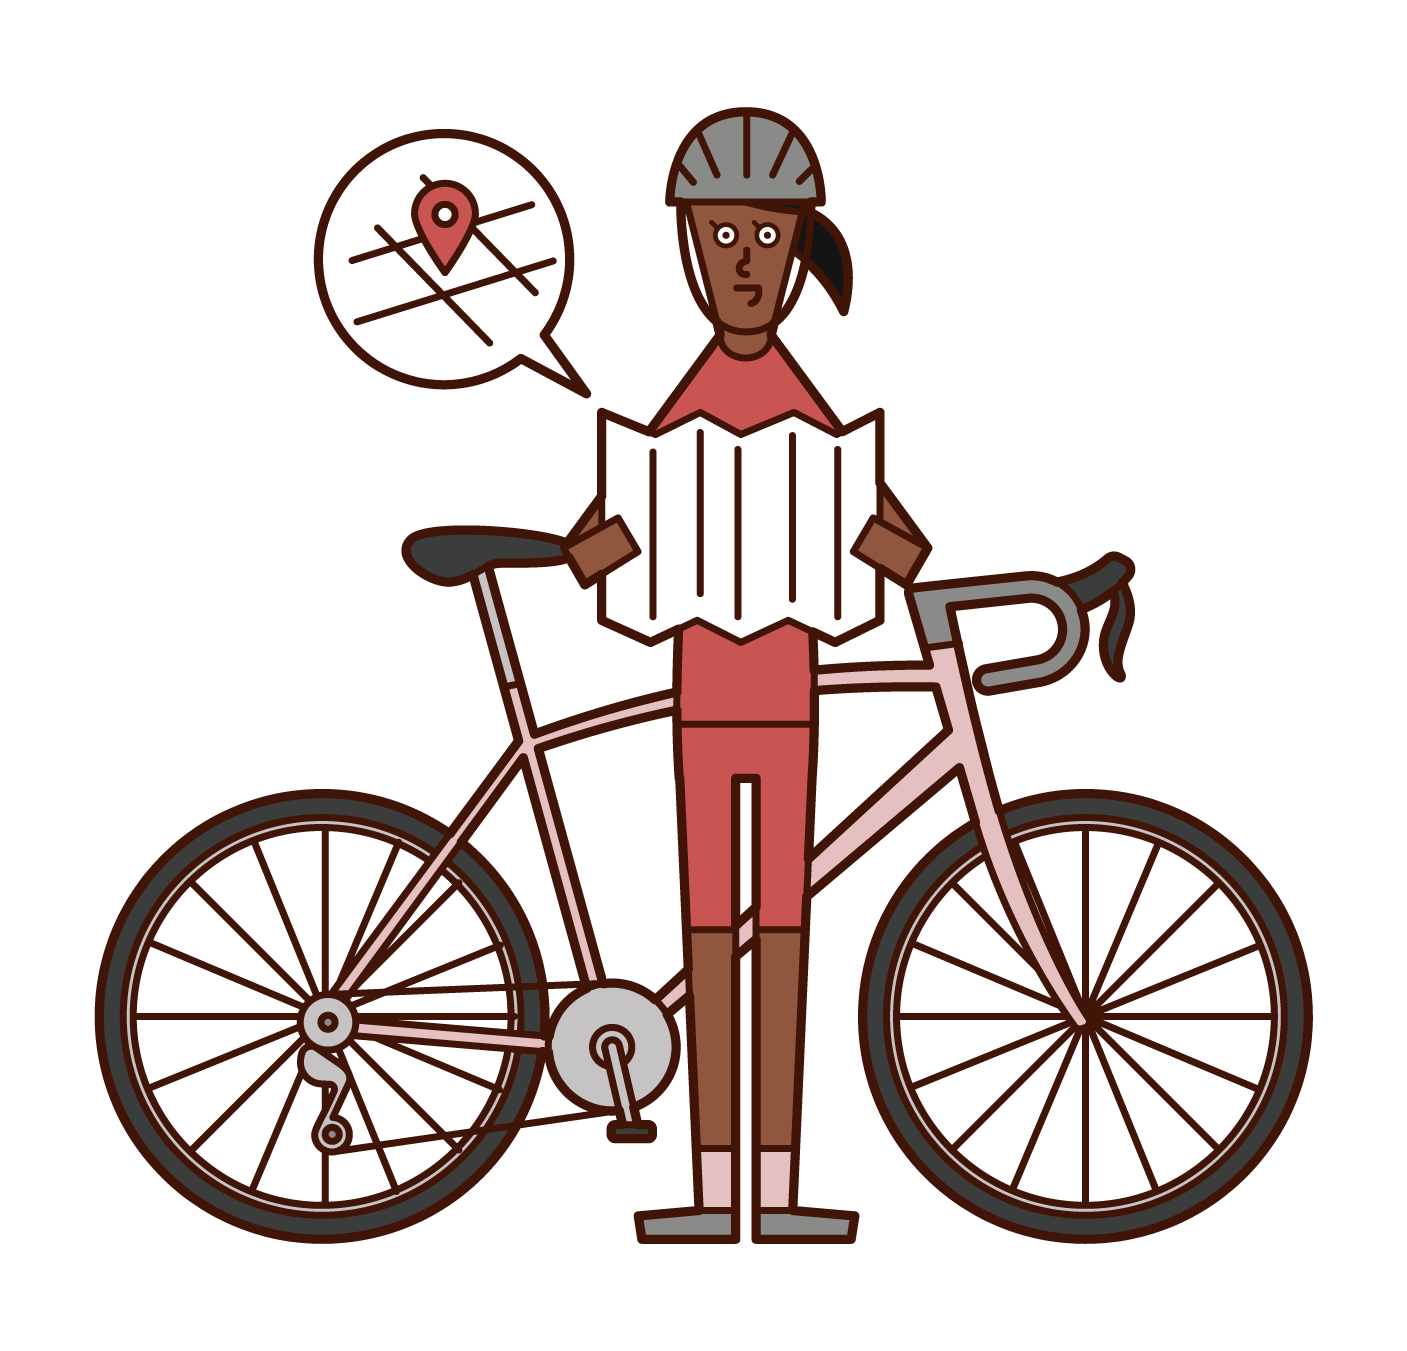 騎自行車的人（女性）的插圖，通過放大地圖看